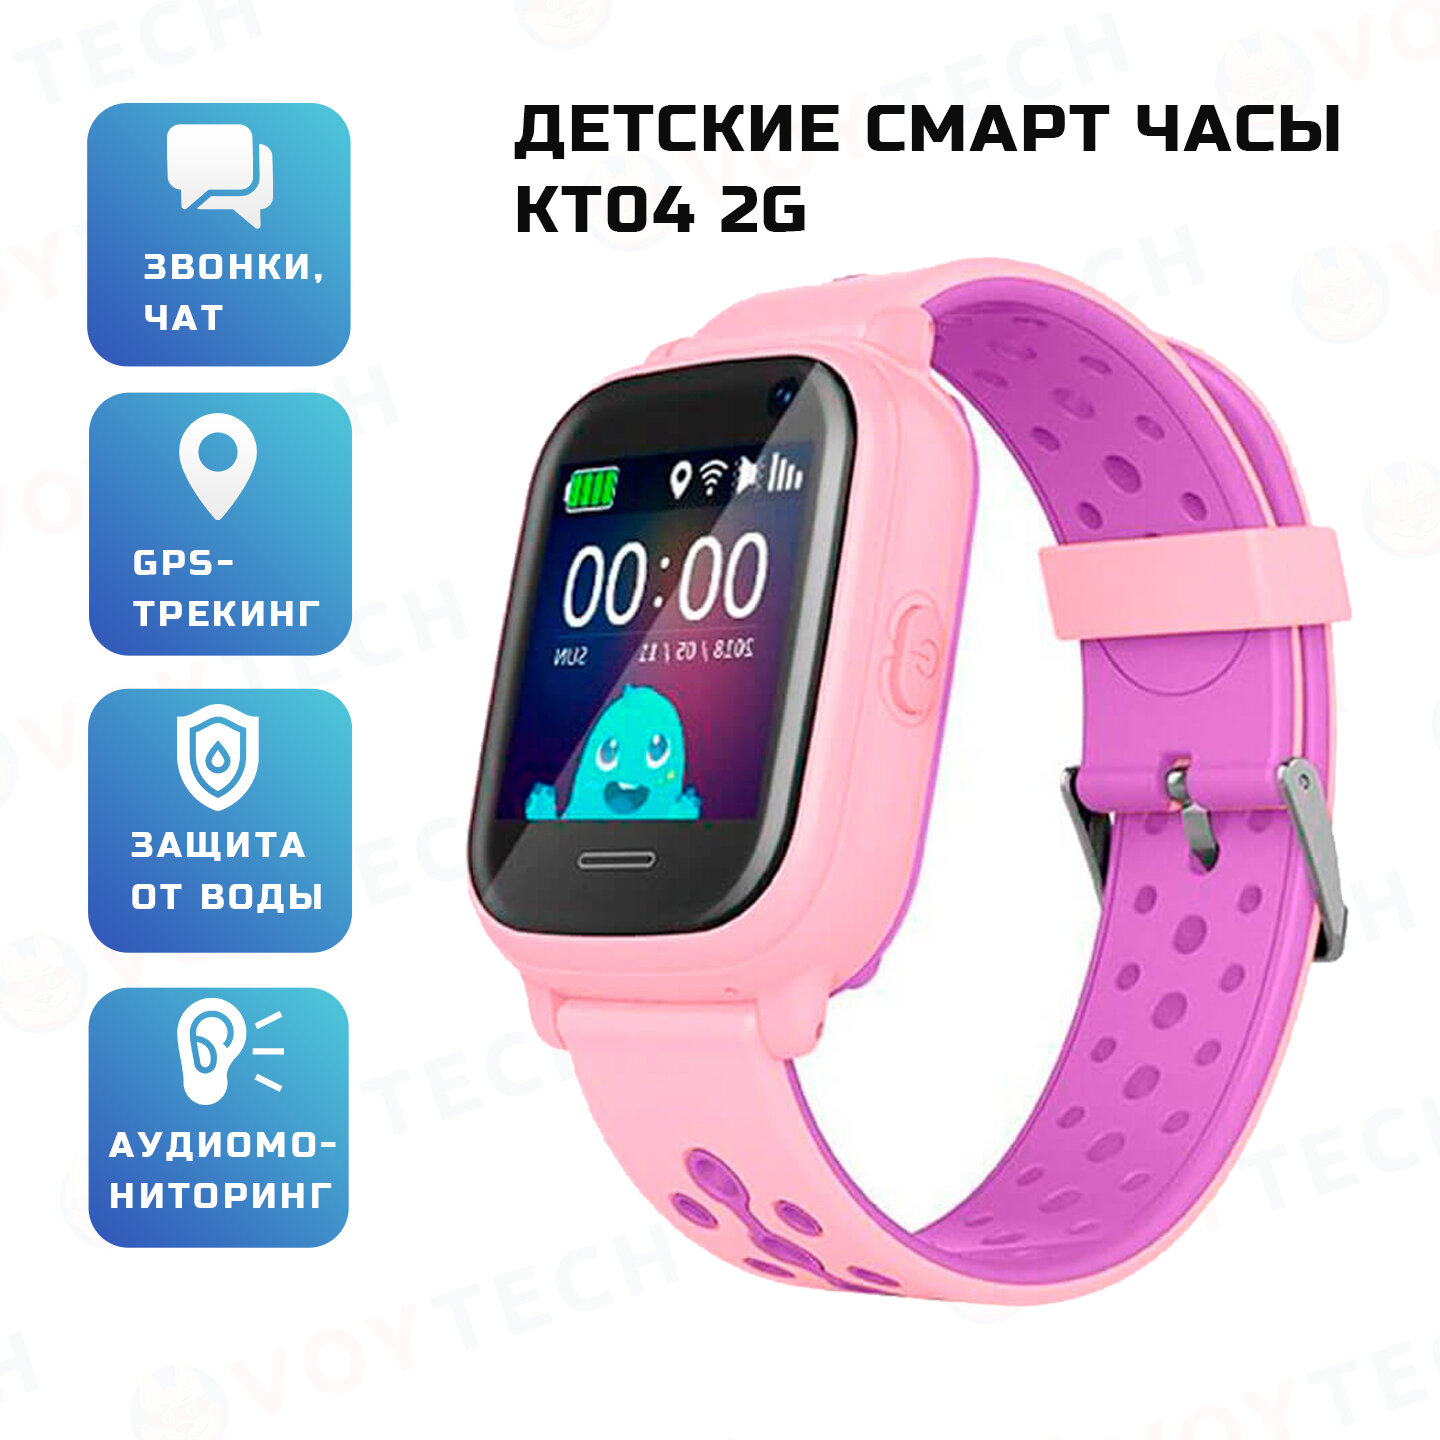 Смарт часы детские KT04 школьнику, умные часы с GPS и сим картой, смарт-часы телефон для девочки в школу, розовый